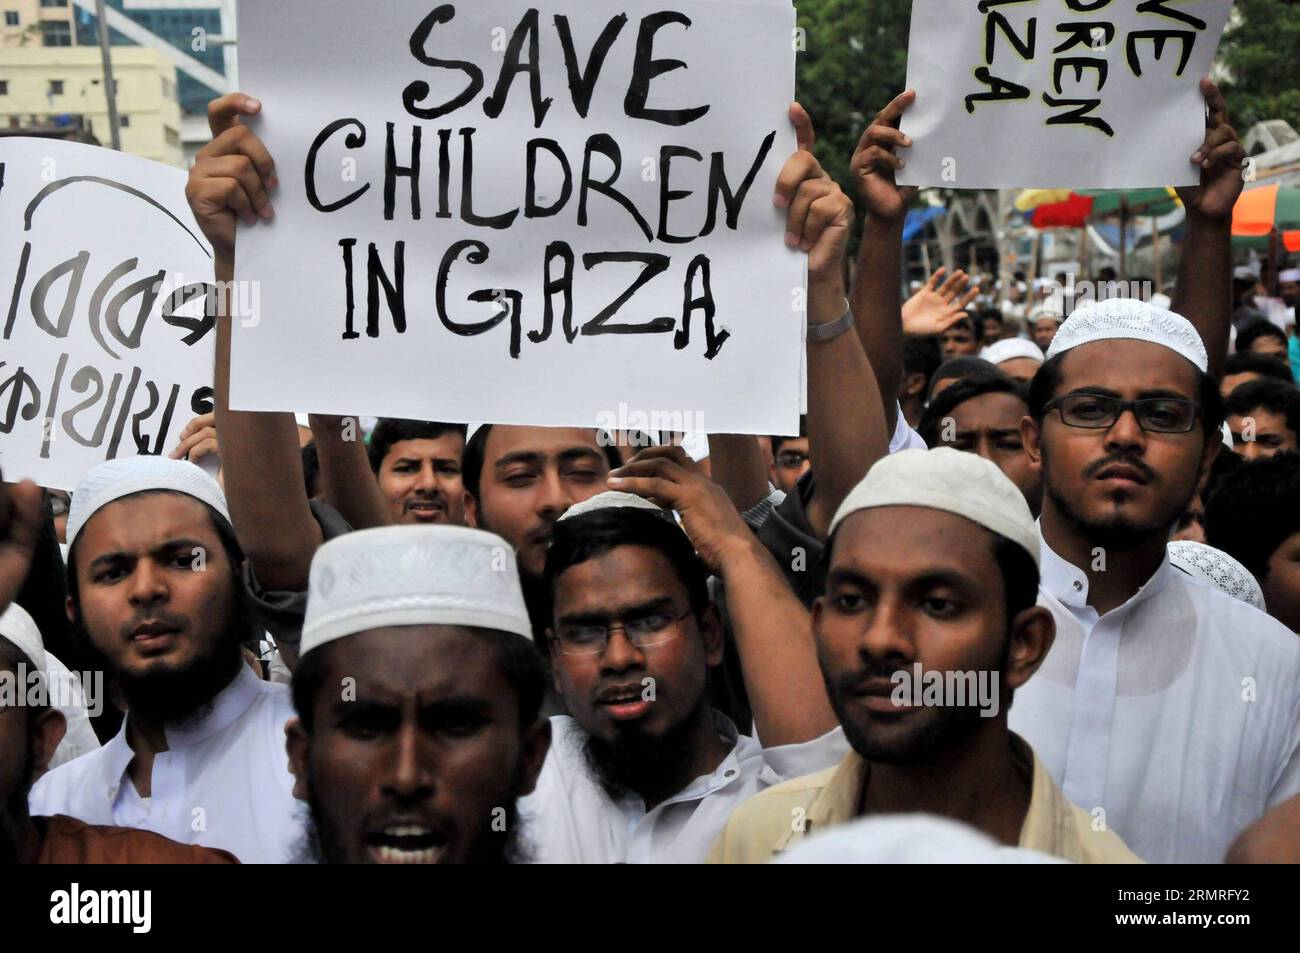 (140718) -- DHAKA, 18 juillet 2014 (Xinhua) -- des musulmans bangladais crient des slogans lors d'un rassemblement de protestation contre les raids aériens israéliens en cours sur la bande de Gaza qui ont fait plus de 260 morts et plus de 1 700 blessés, à Dhaka, Bangladesh, le 18 juillet 2014. Des milliers de personnes ont pris part à la manifestation devant la Mosquée nationale de Dhaka contre les frappes aériennes israéliennes sur la bande de Gaza vendredi. (Xinhua/Shariful Islam) BANGLADESH-DHAKA-ISRAËL-PROTEST PUBLICATIONxNOTxINxCHN Dhaka juillet 18 2014 XINHUA les musulmans bangladais crient des slogans lors d'un rassemblement de protestation contre les raids aériens israéliens en cours SUR Gaza Banque D'Images